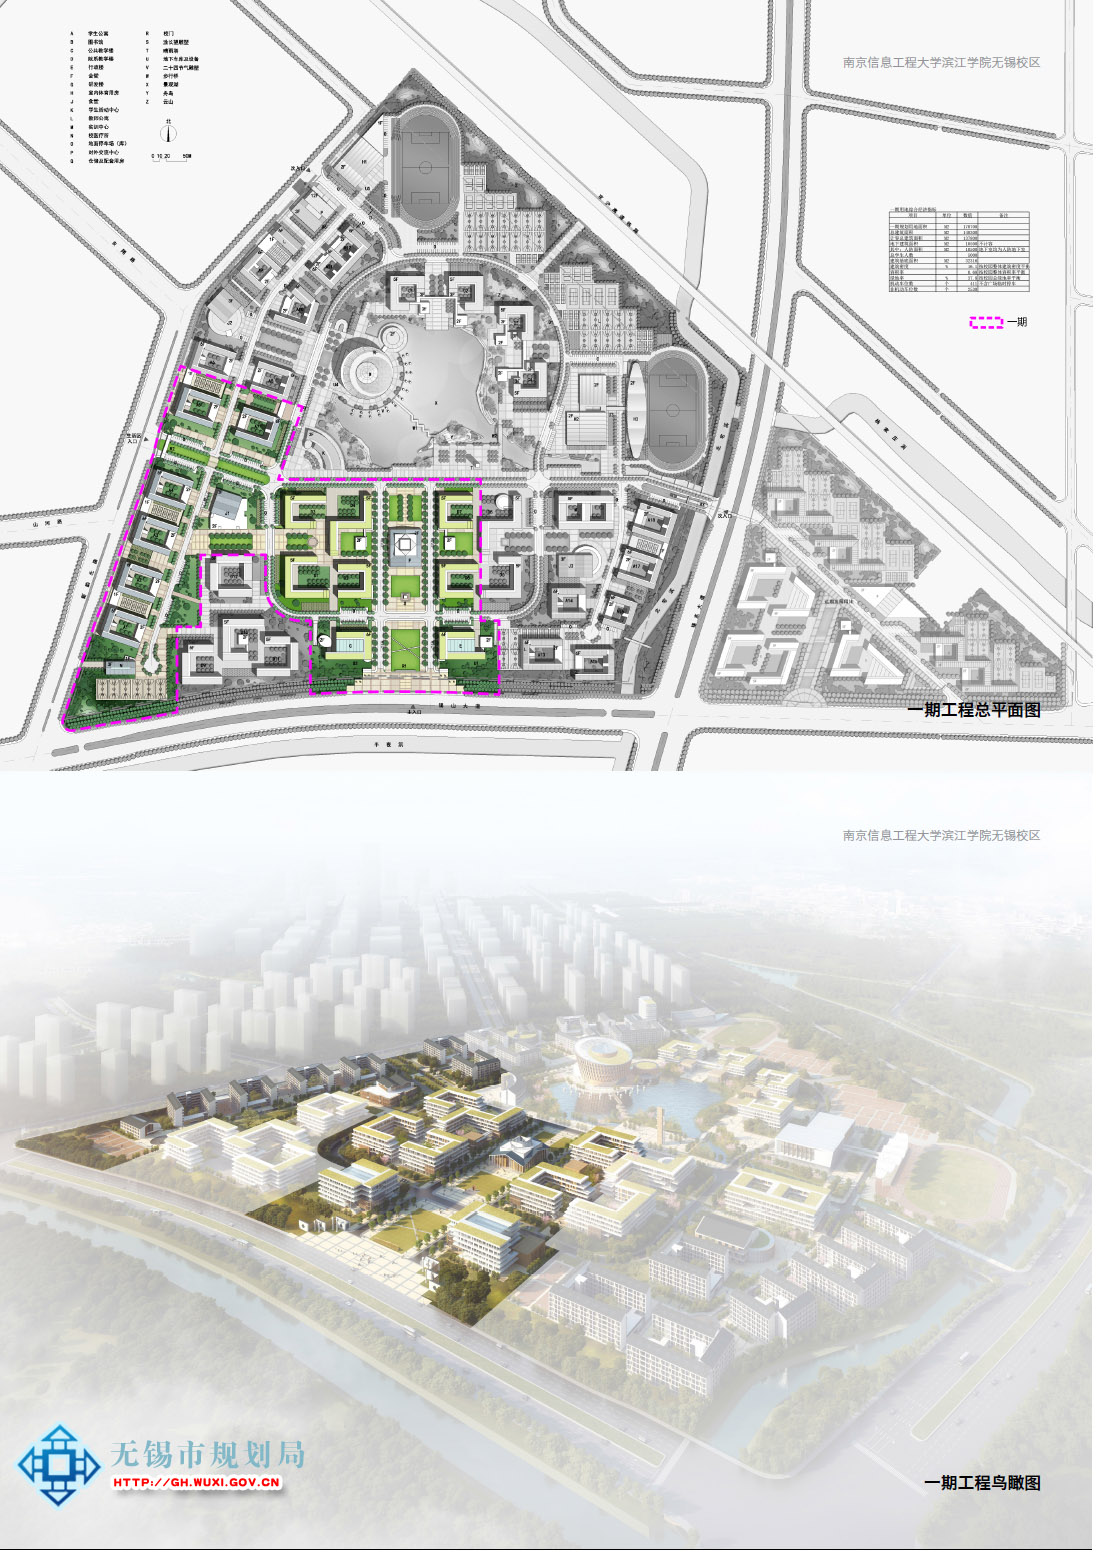 南京信息工程大学滨江学院无锡校区建设项目（一期工程）规划设计方案批前公示